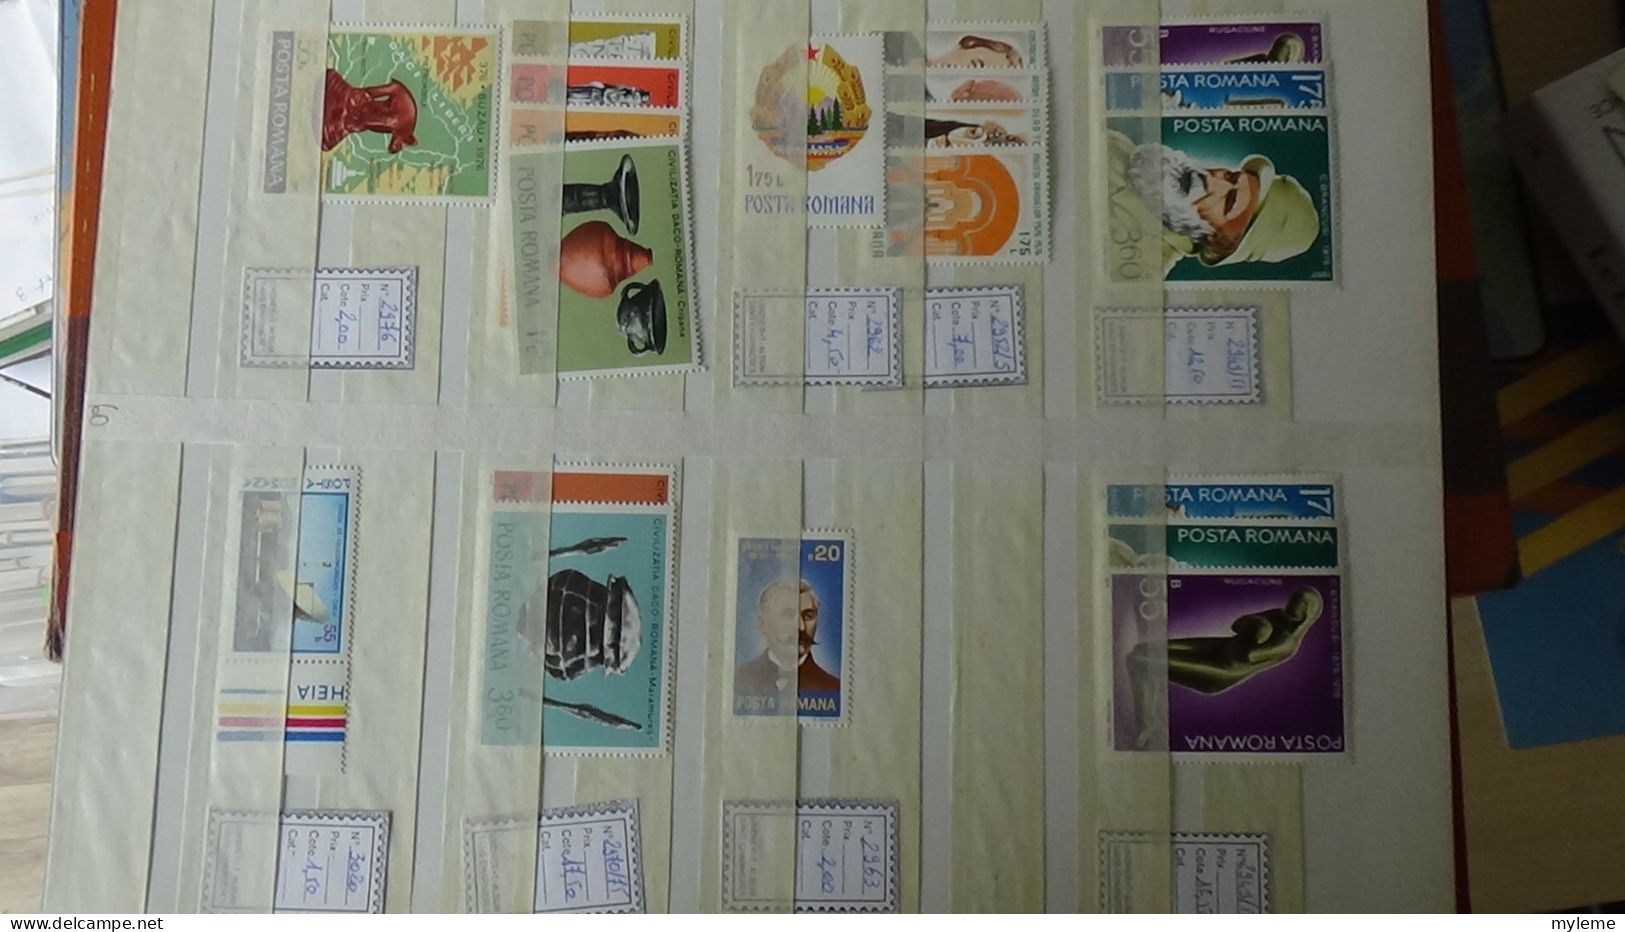 BG5 Ensemble de timbres de divers pays + plaquette de timbres ** de France Cote très sympa. A saisir !!!